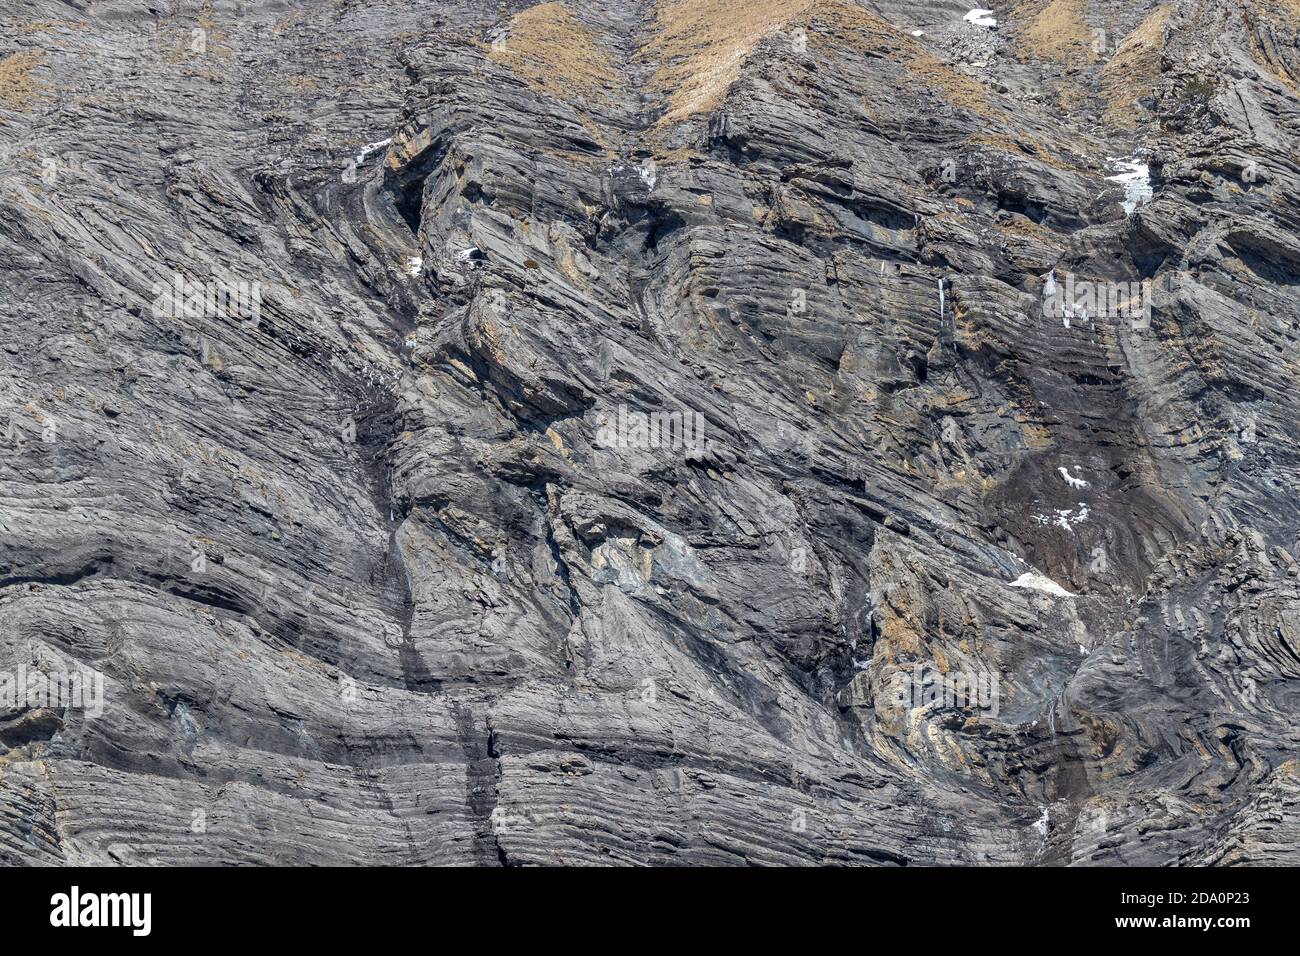 Différentes couches ou plis géologiques dans la roche alpine se sont développés lors du pliage des sédiments ou de la déformation ductile, Kandersteg Suisse. Banque D'Images